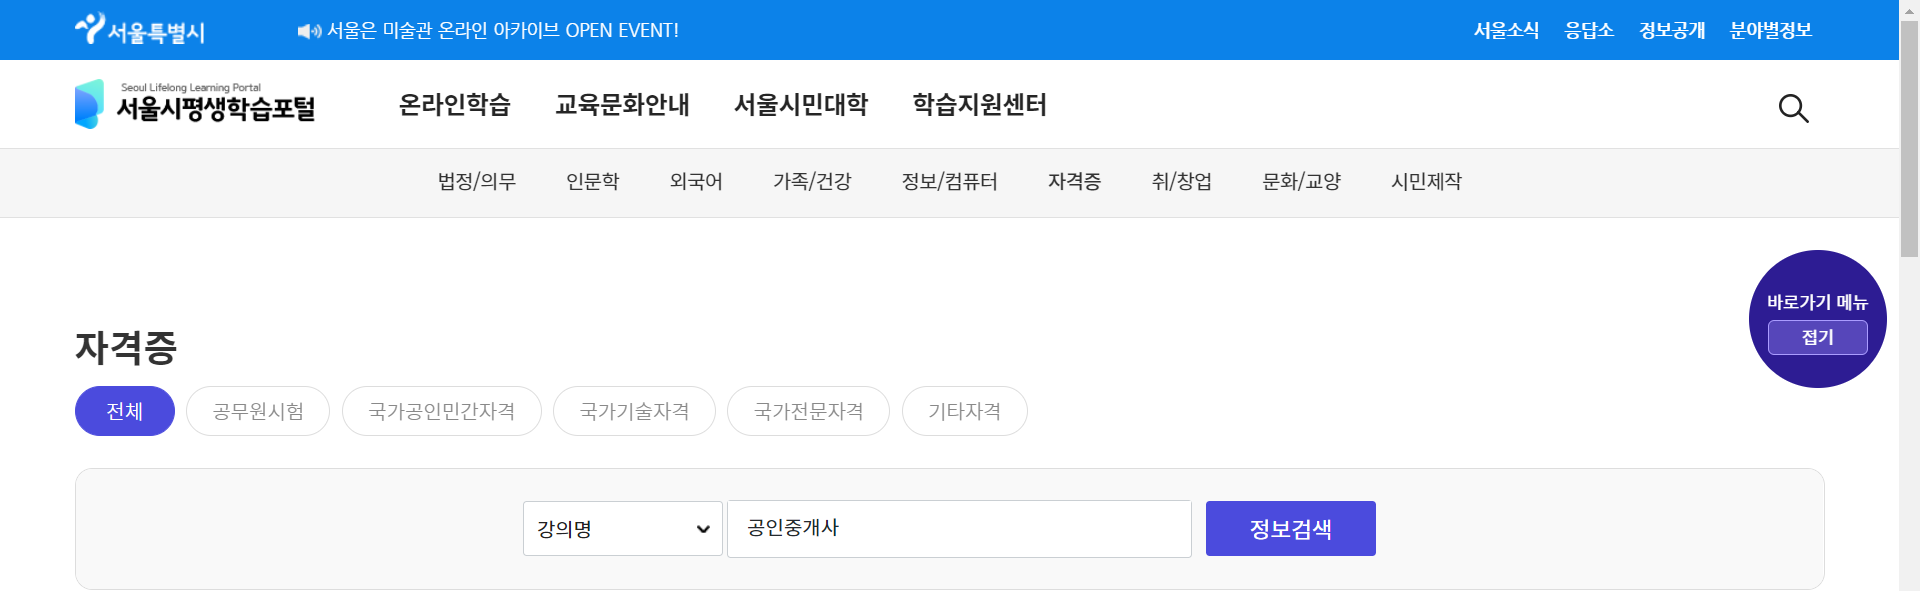 서울시평생학습포탕 무료인강 홈페이지